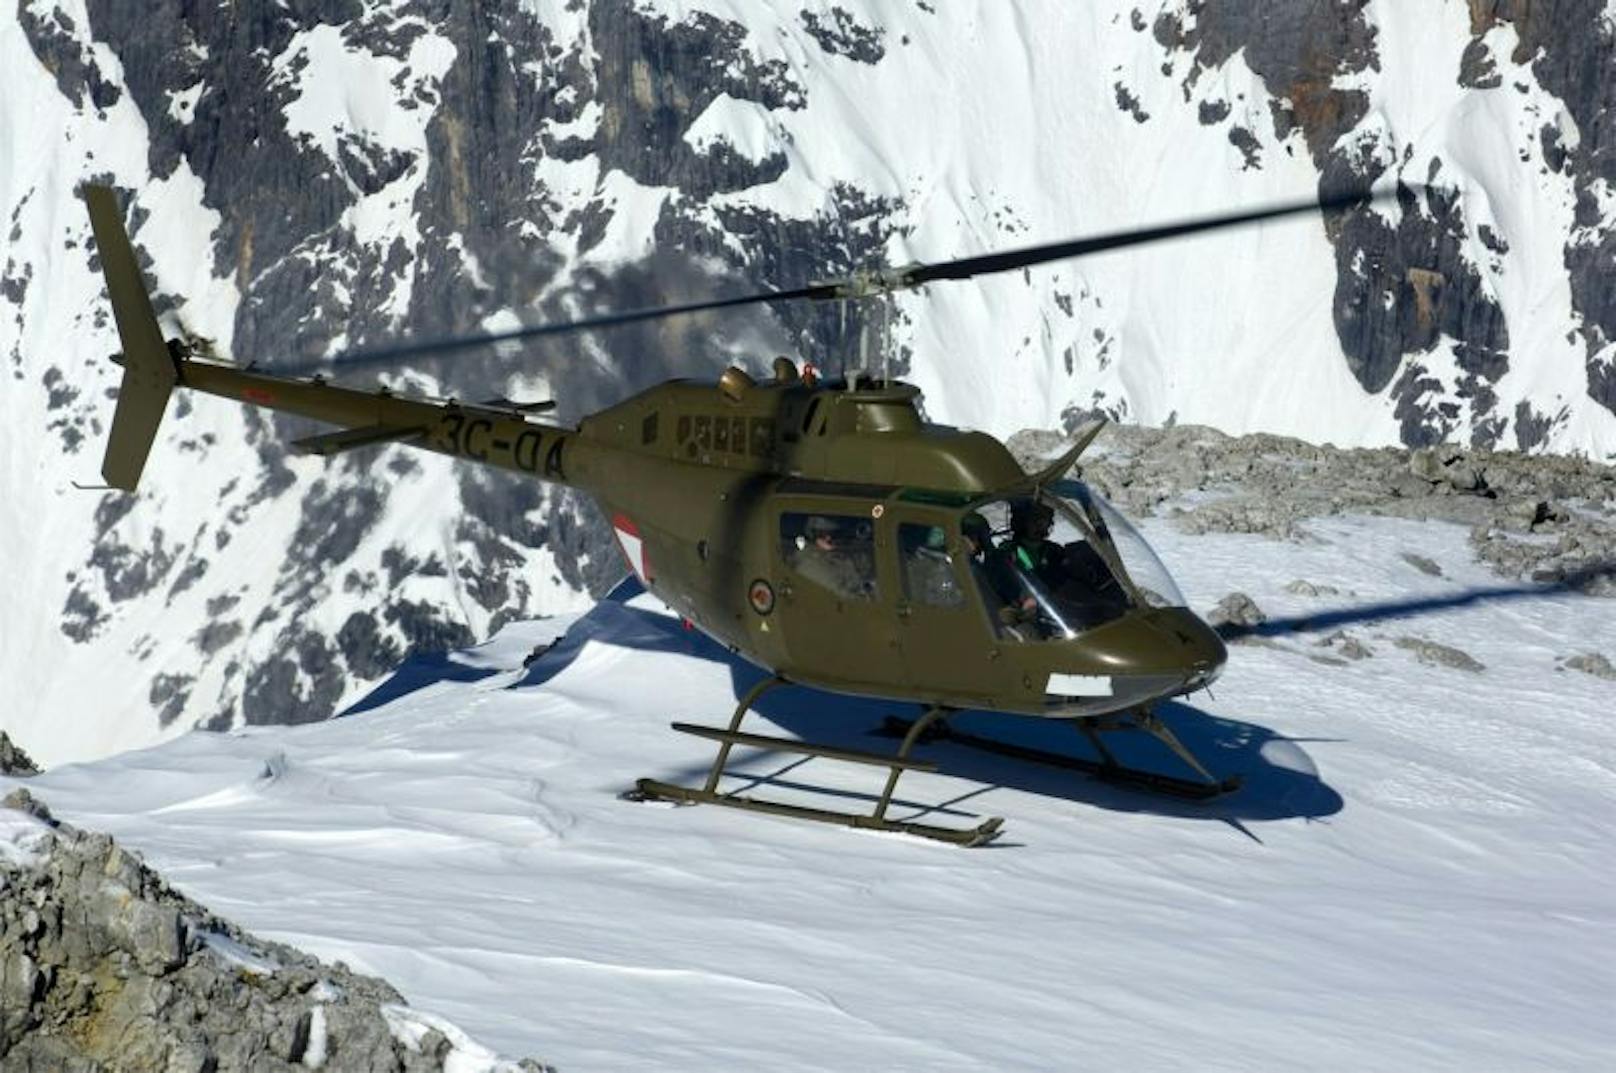 Ebenfalls leicht und wendig ist der Bell OH-58 "Kiowa", ein bewaffneter Verbindungshubschrauber.